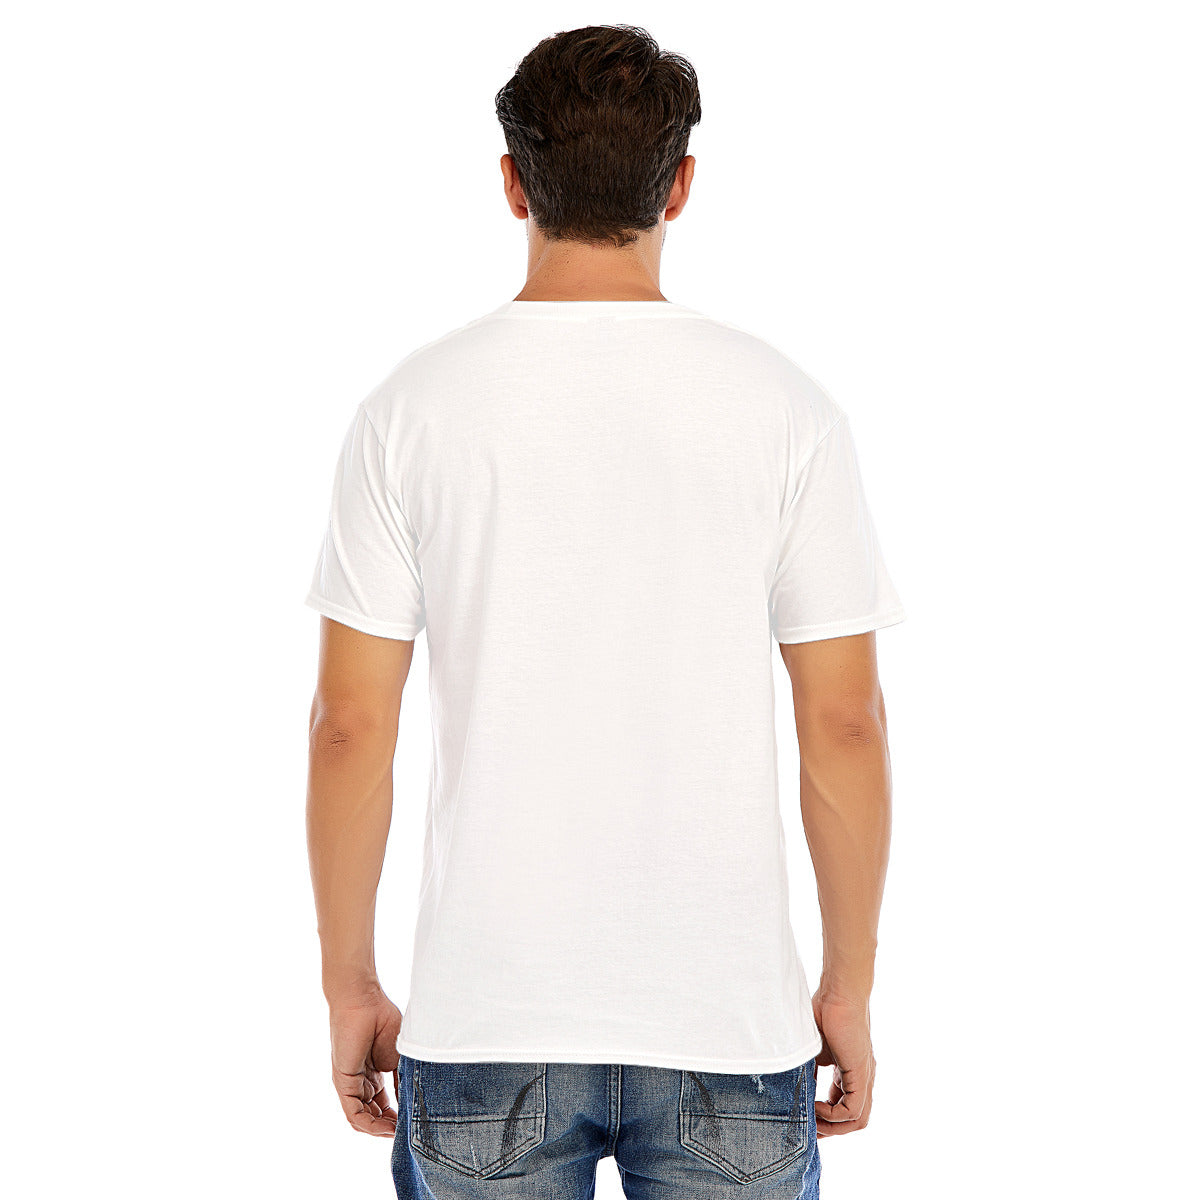 Cowboy 107 -- Unisex O-neck Short Sleeve T-shirt